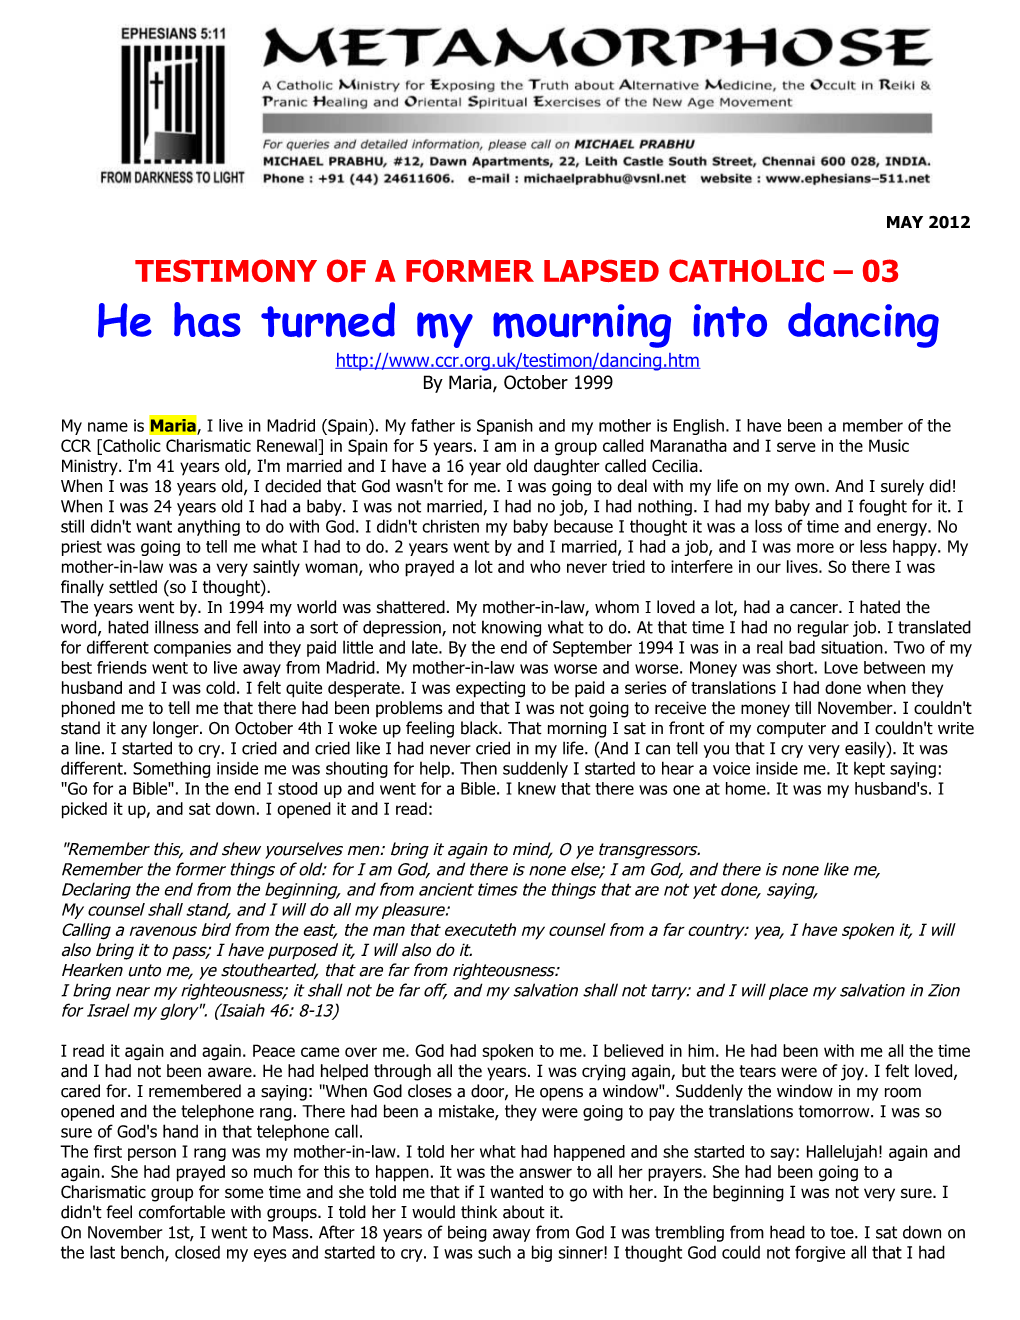 Testimony of a Former Lapsed Catholic 03